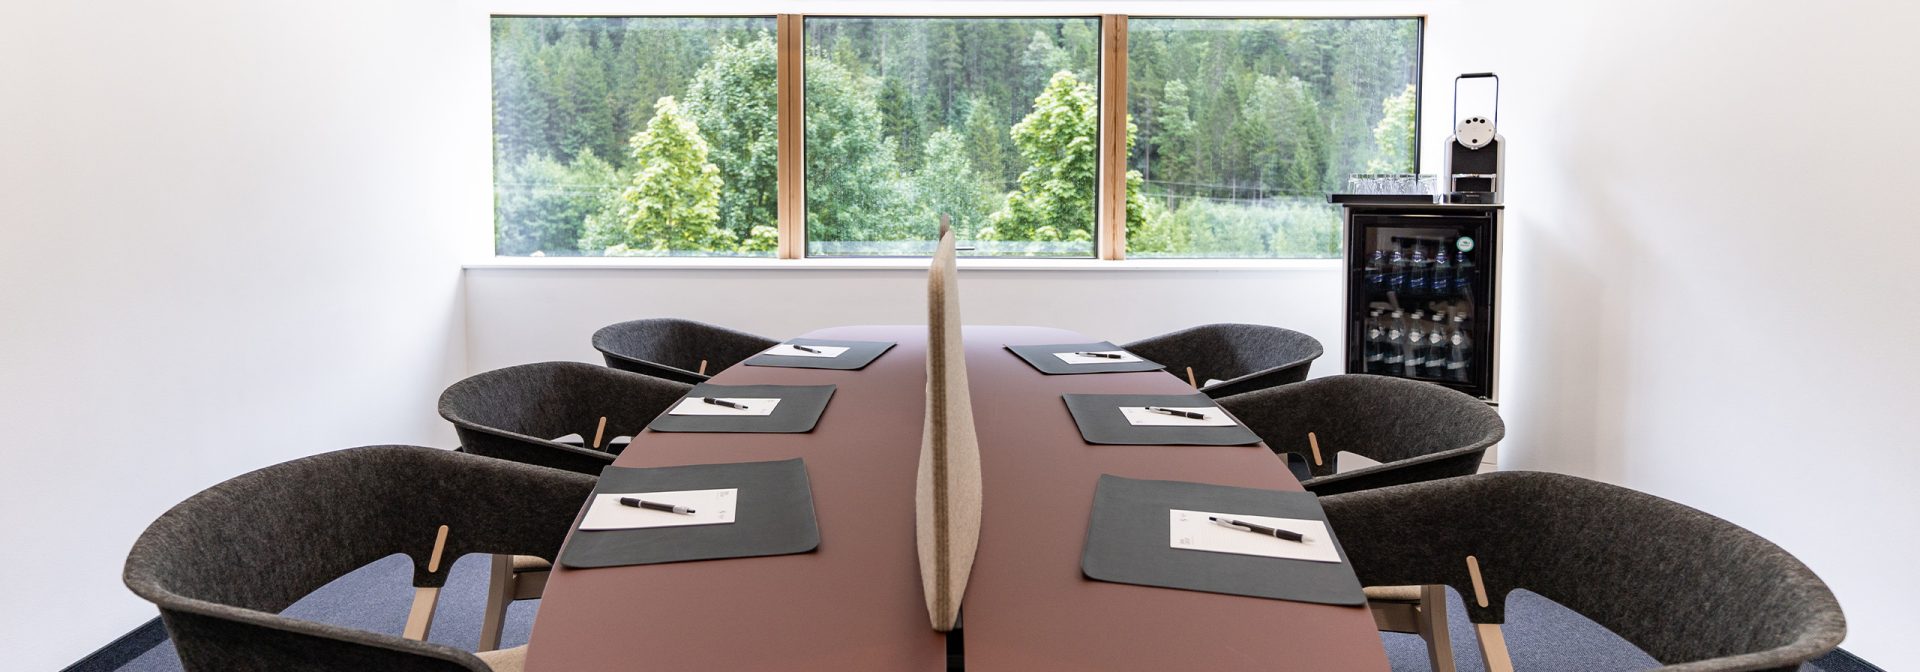 Ein workshopraum, in dem ein ovaler Tisch mit Bestuhlung für sieben Personen steht.